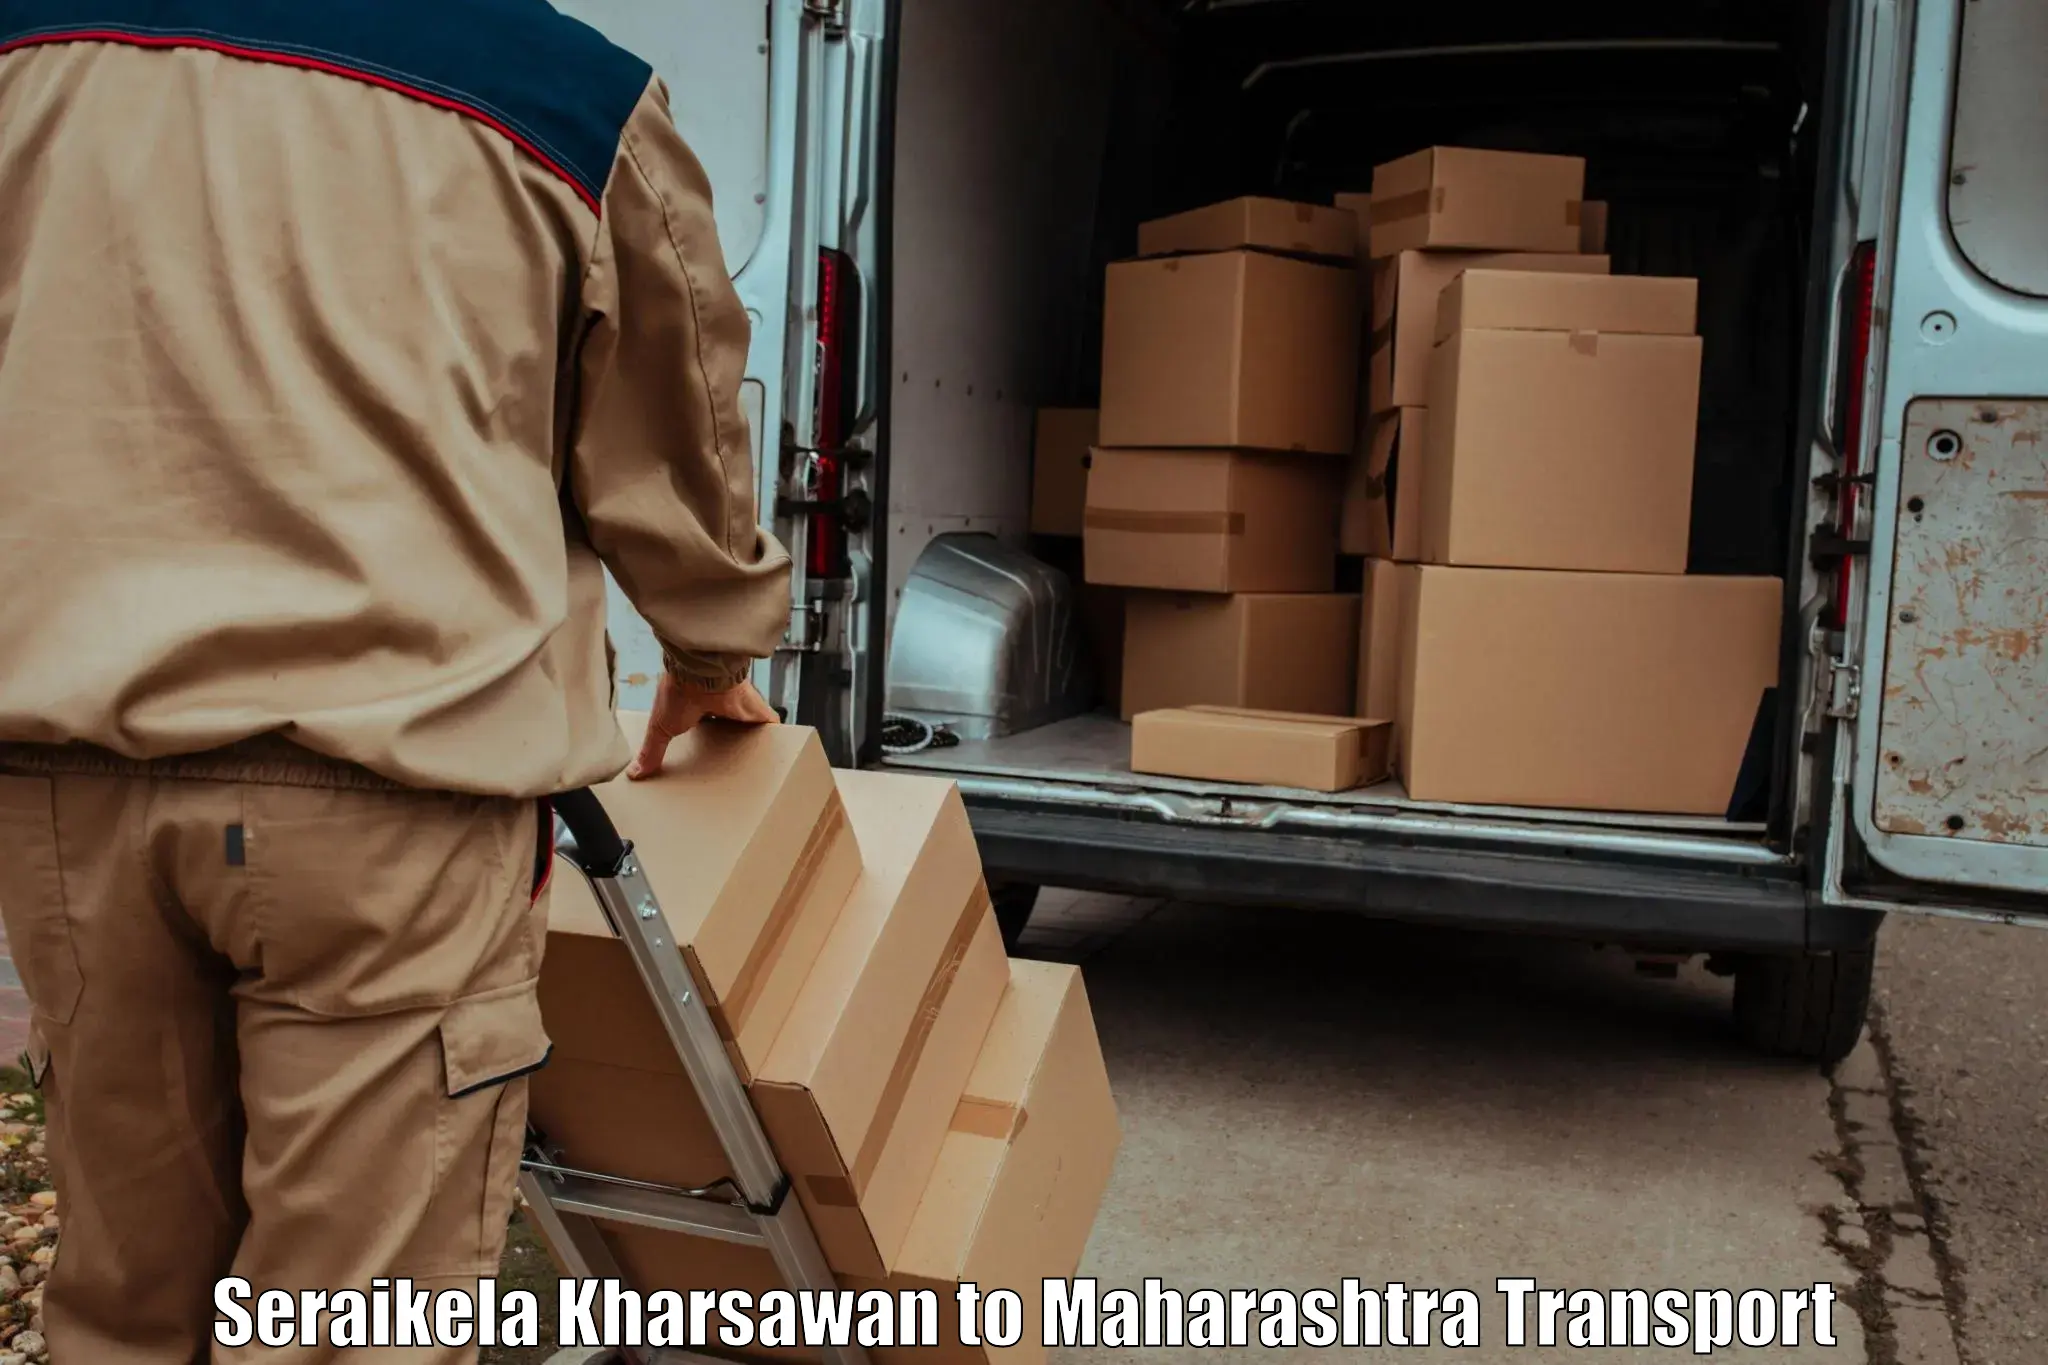 Transport in sharing Seraikela Kharsawan to Palghar